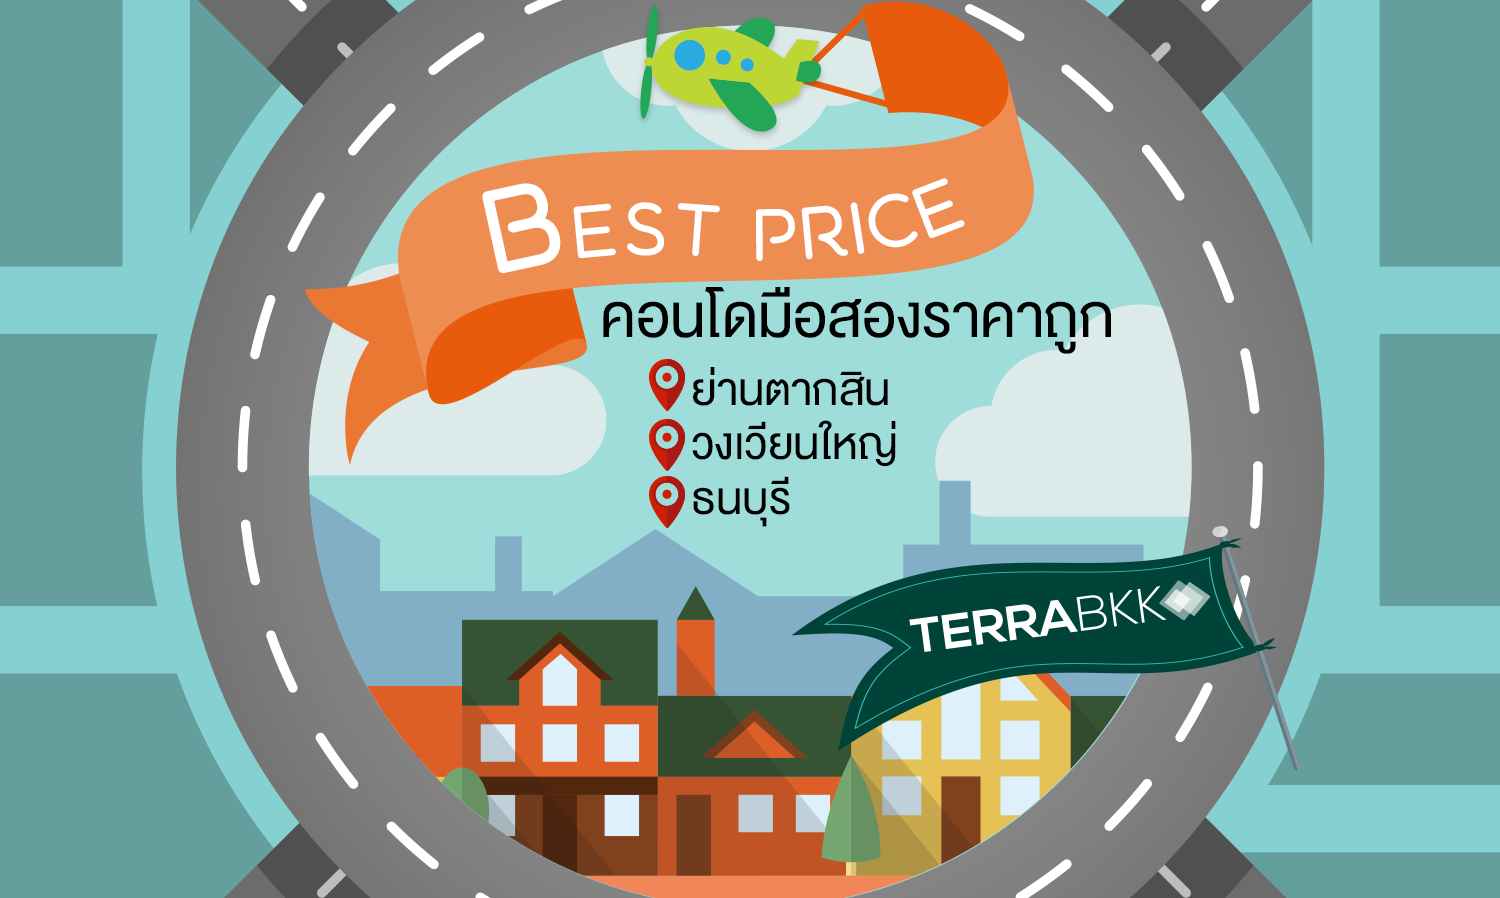 Best Price คอนโดมือสองราคาถูก ย่านตากสิน-วงเวียนใหญ่-ธนบุรี